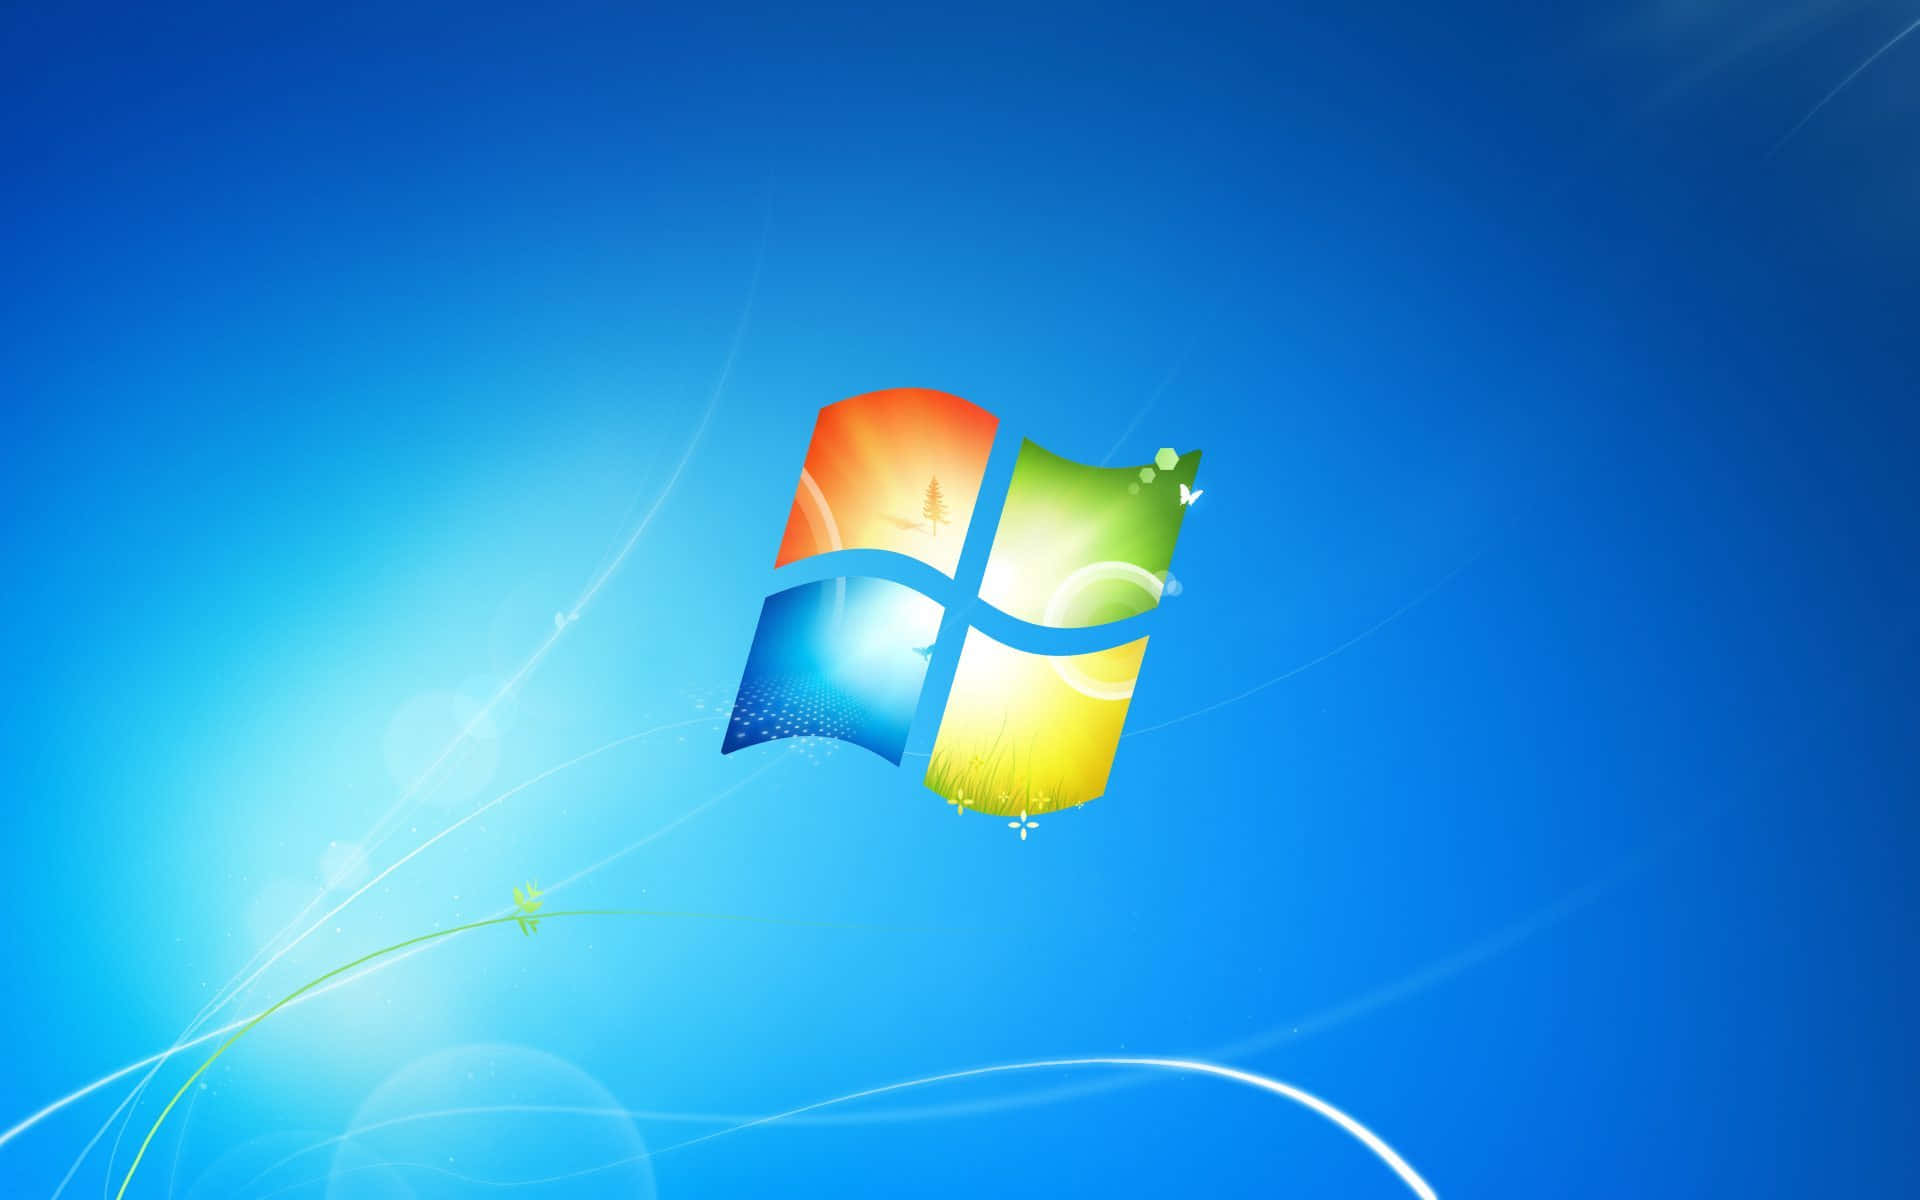 Windows7 - Installering Af Opdateringer, Arbejder På Tværs Af Flere Enheder